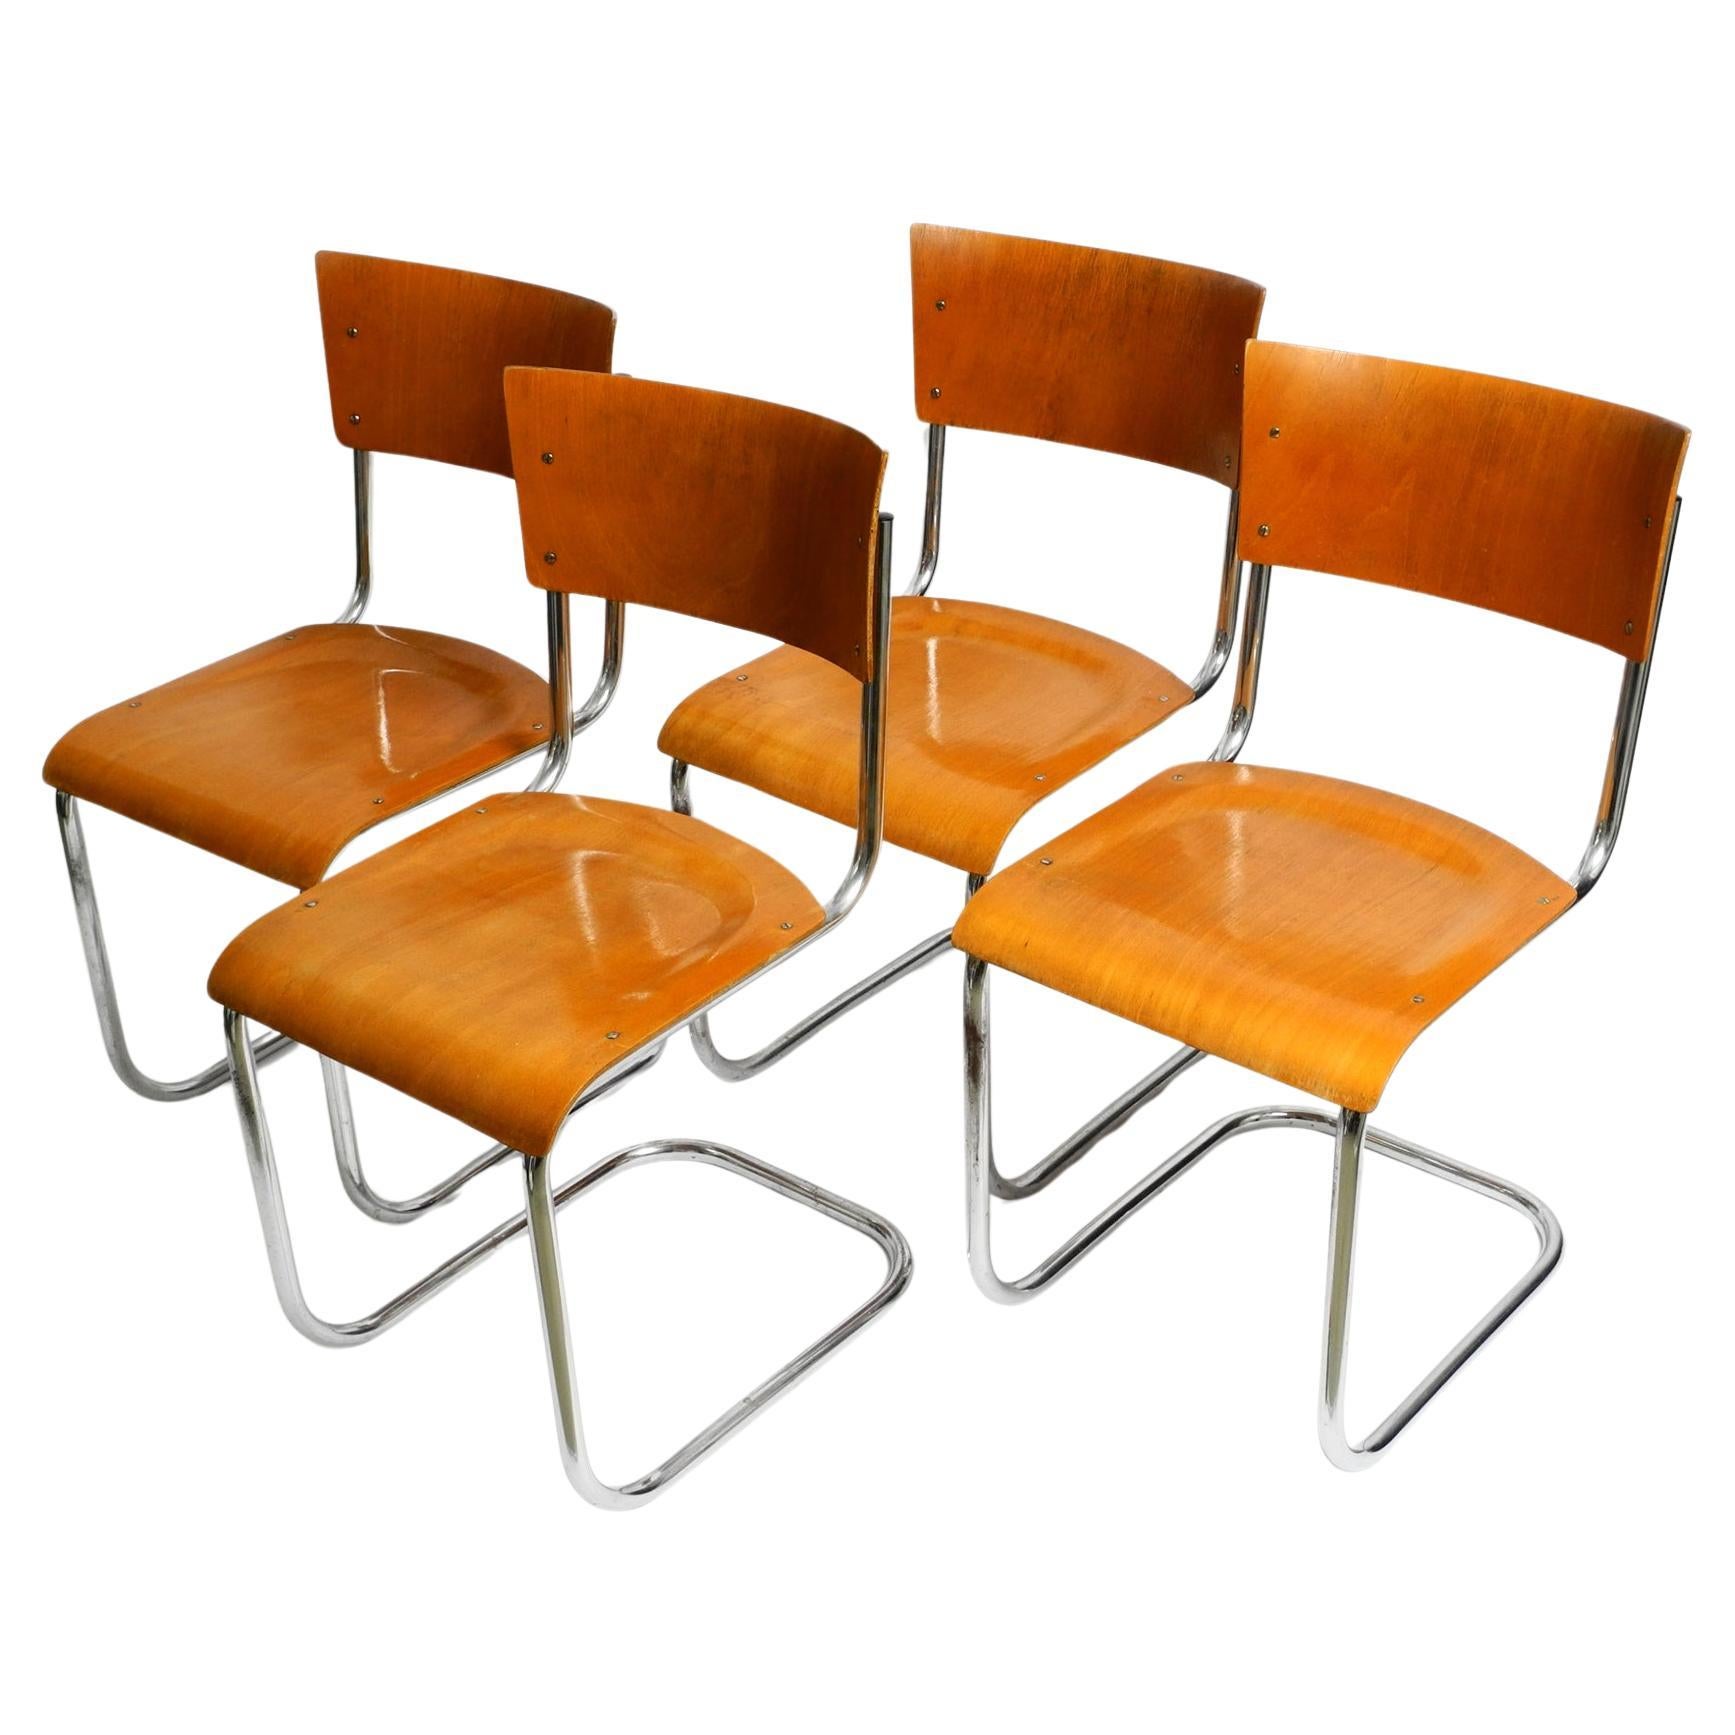 Quatre chaises cantilever Bauhaus en acier tubulaire des années 30 de Mart Stam pour Robert Slezak en vente